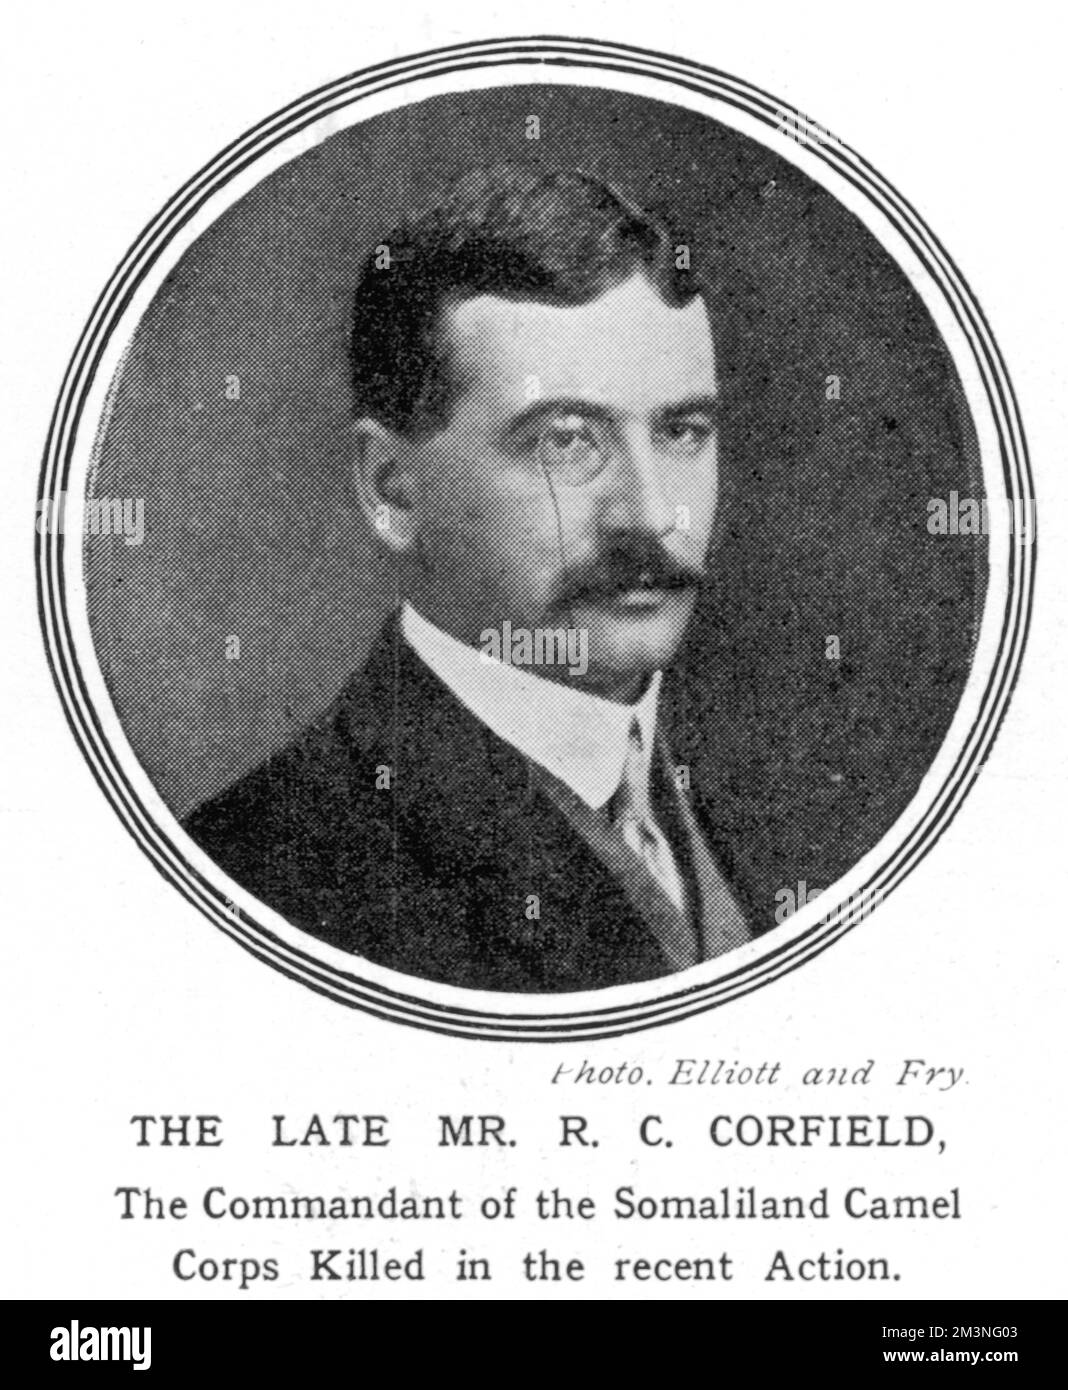 Richard Conyngham Corfield (1882-1913), getötet, während er das somaliland-Kamelkorps befehligte, als er sich mit den Derwischen verbündete. Datum: 20.. Jahrhundert Stockfoto